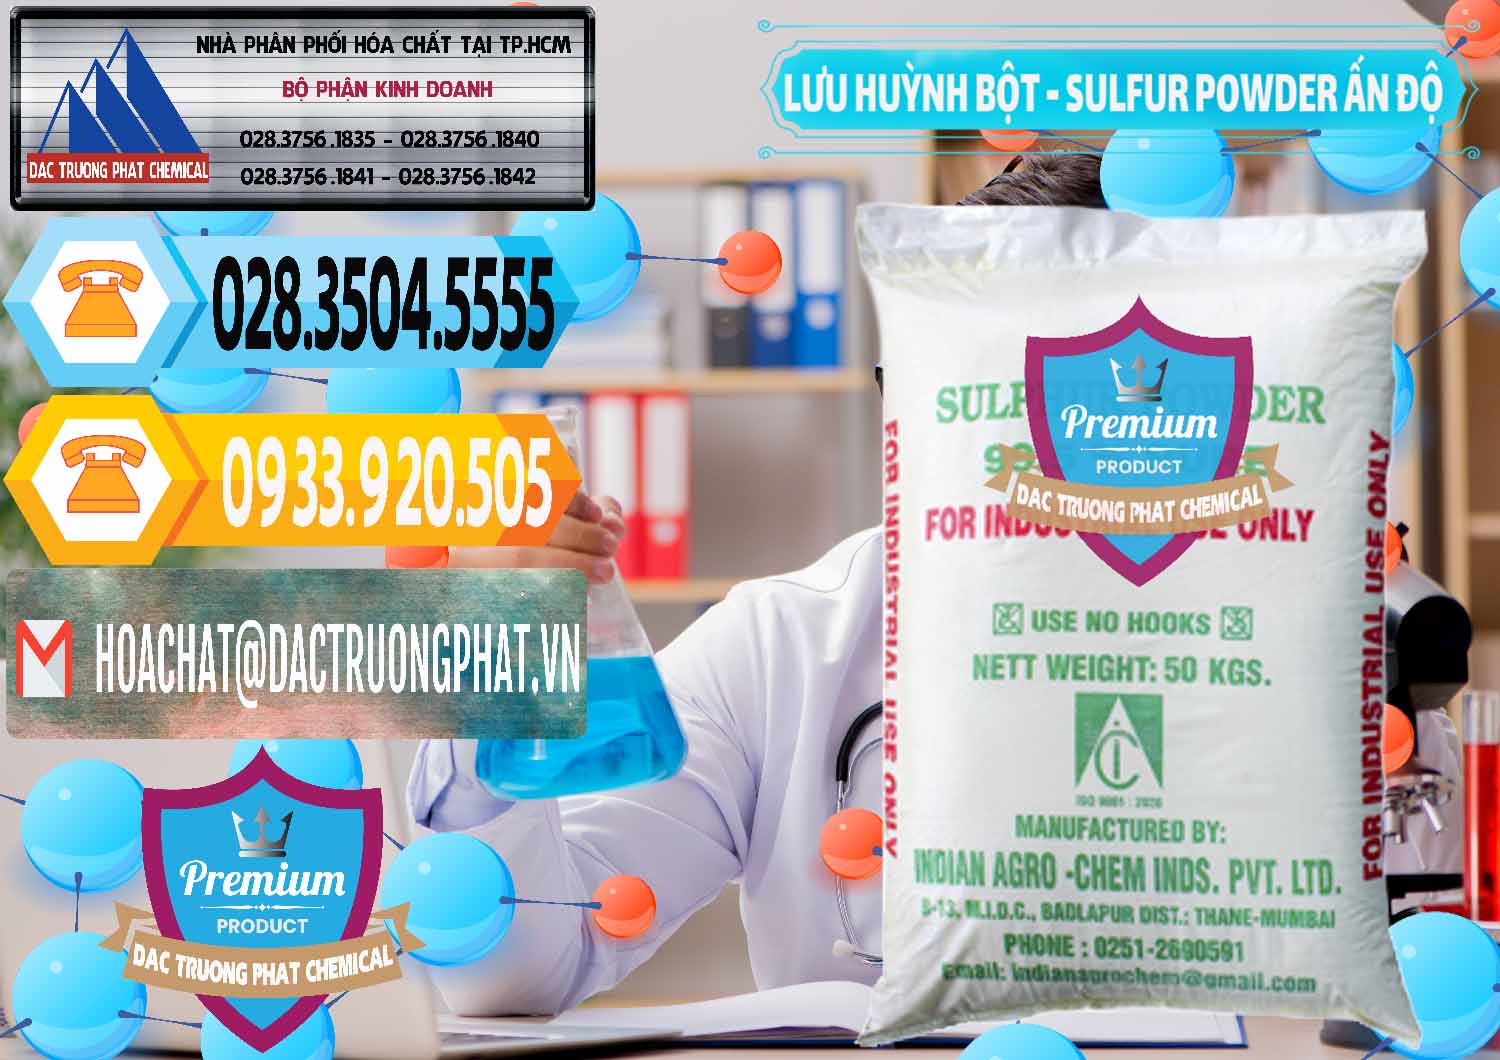 Công ty cung cấp và bán Lưu huỳnh Bột - Sulfur Powder Ấn Độ India - 0347 - Đơn vị chuyên phân phối & cung ứng hóa chất tại TP.HCM - hoachattayrua.net